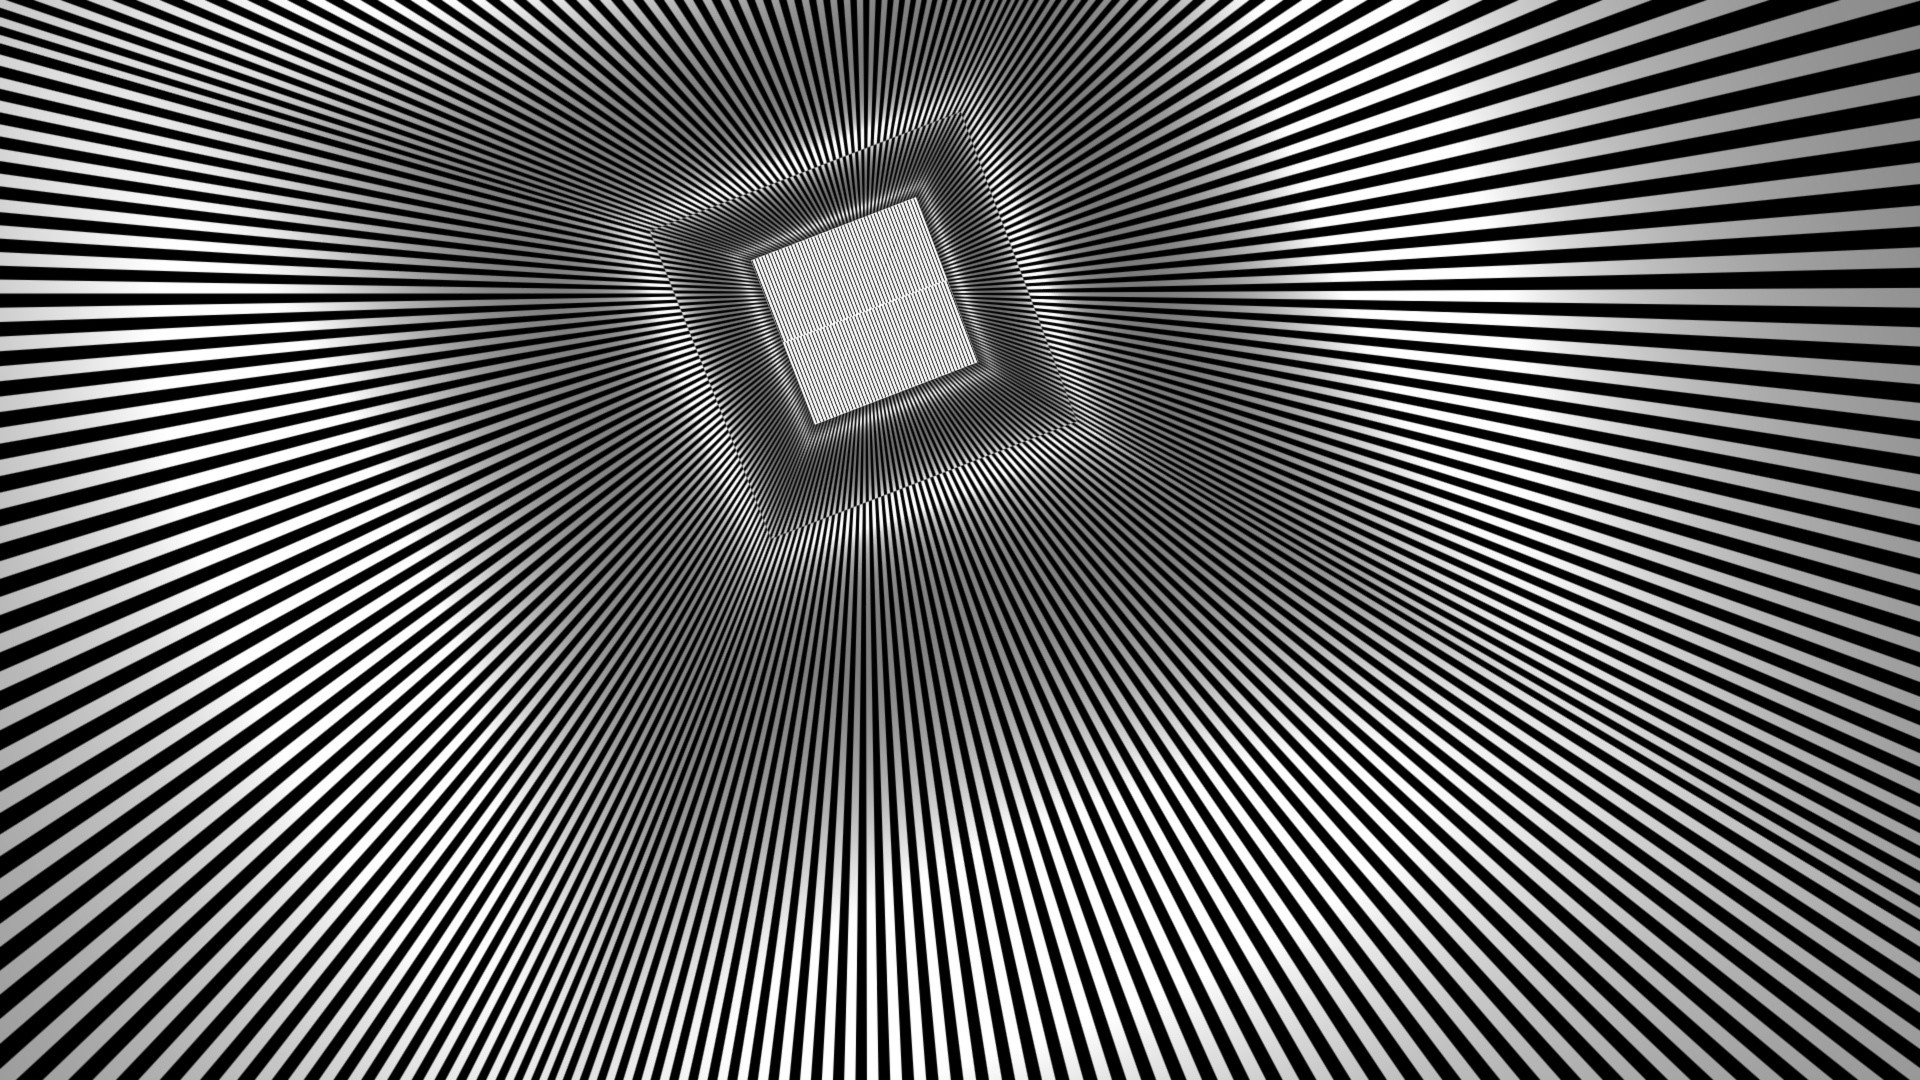 1920x1080 square optical illusion wallpaper 44003